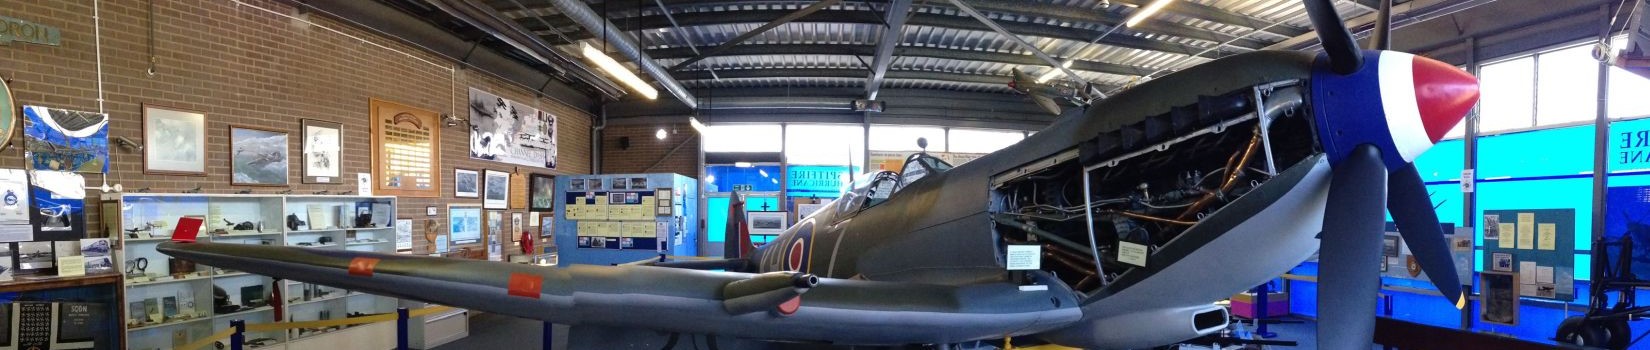 The Spitfire & Hurricane Memorial Museum